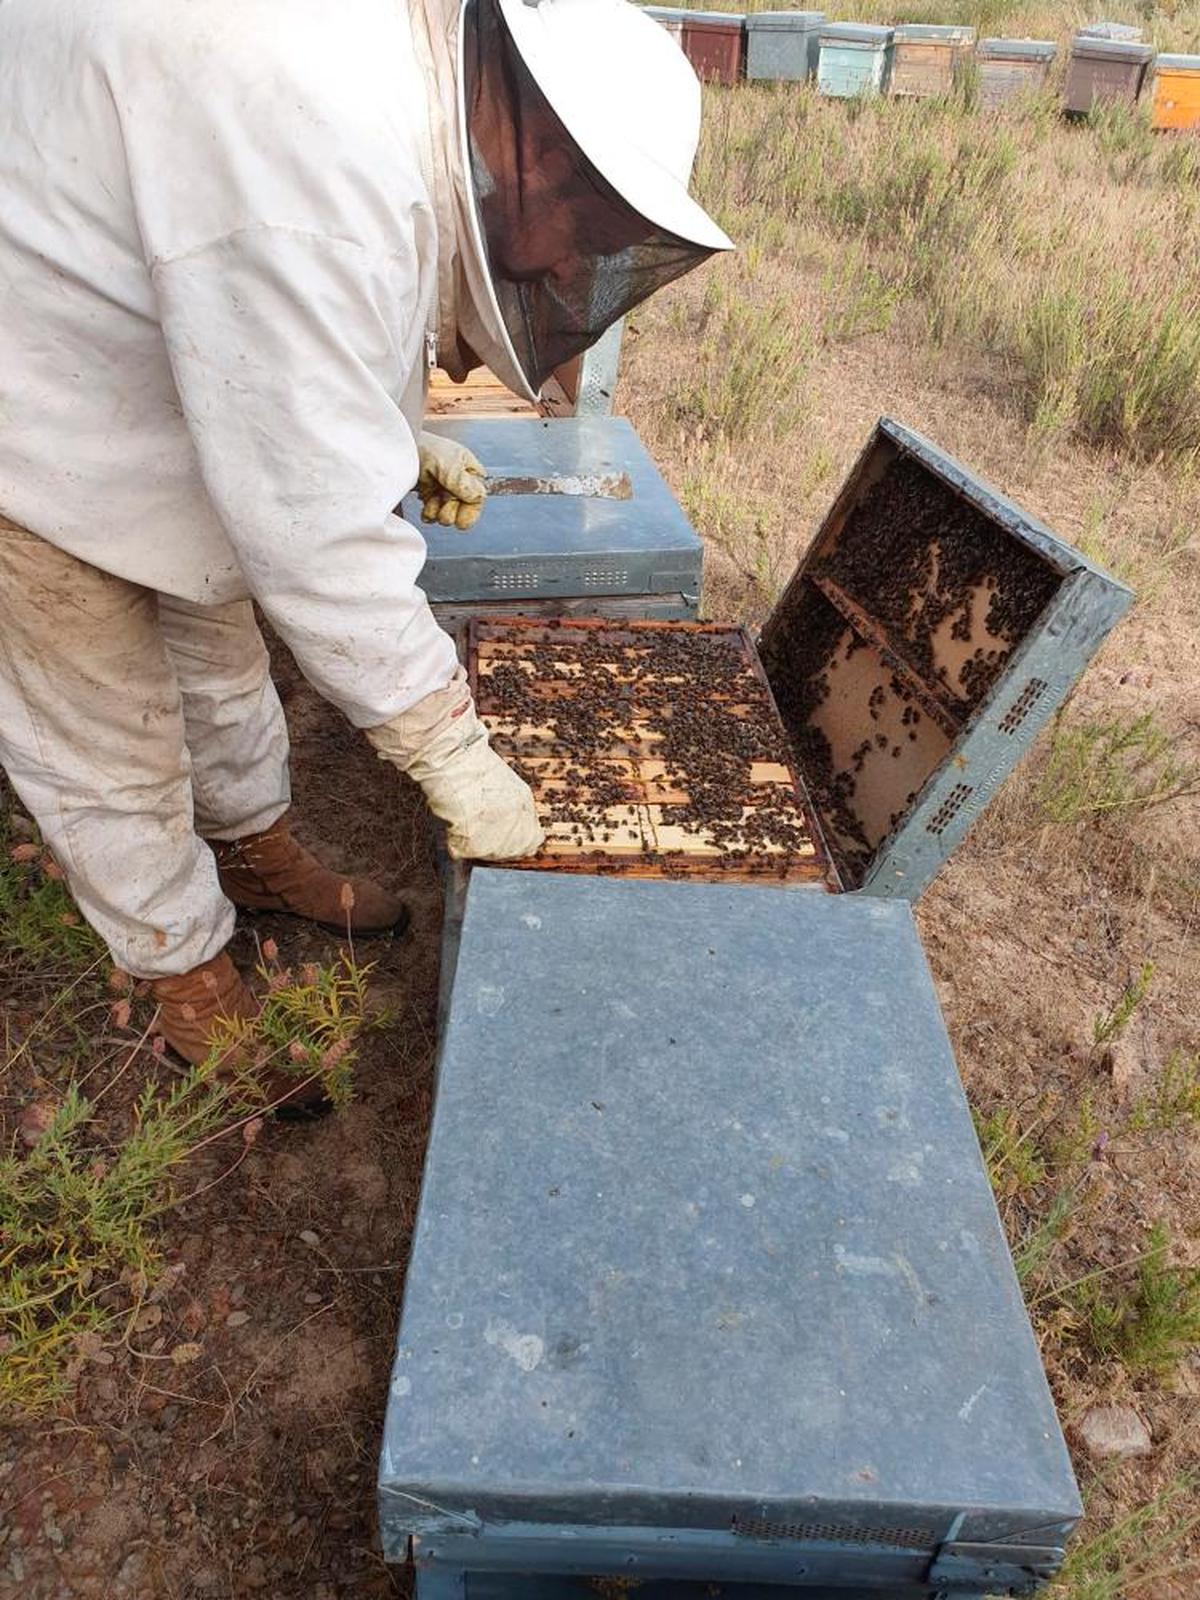 La CE revisa el plan para evitar la pérdida de abejas y mariposas.